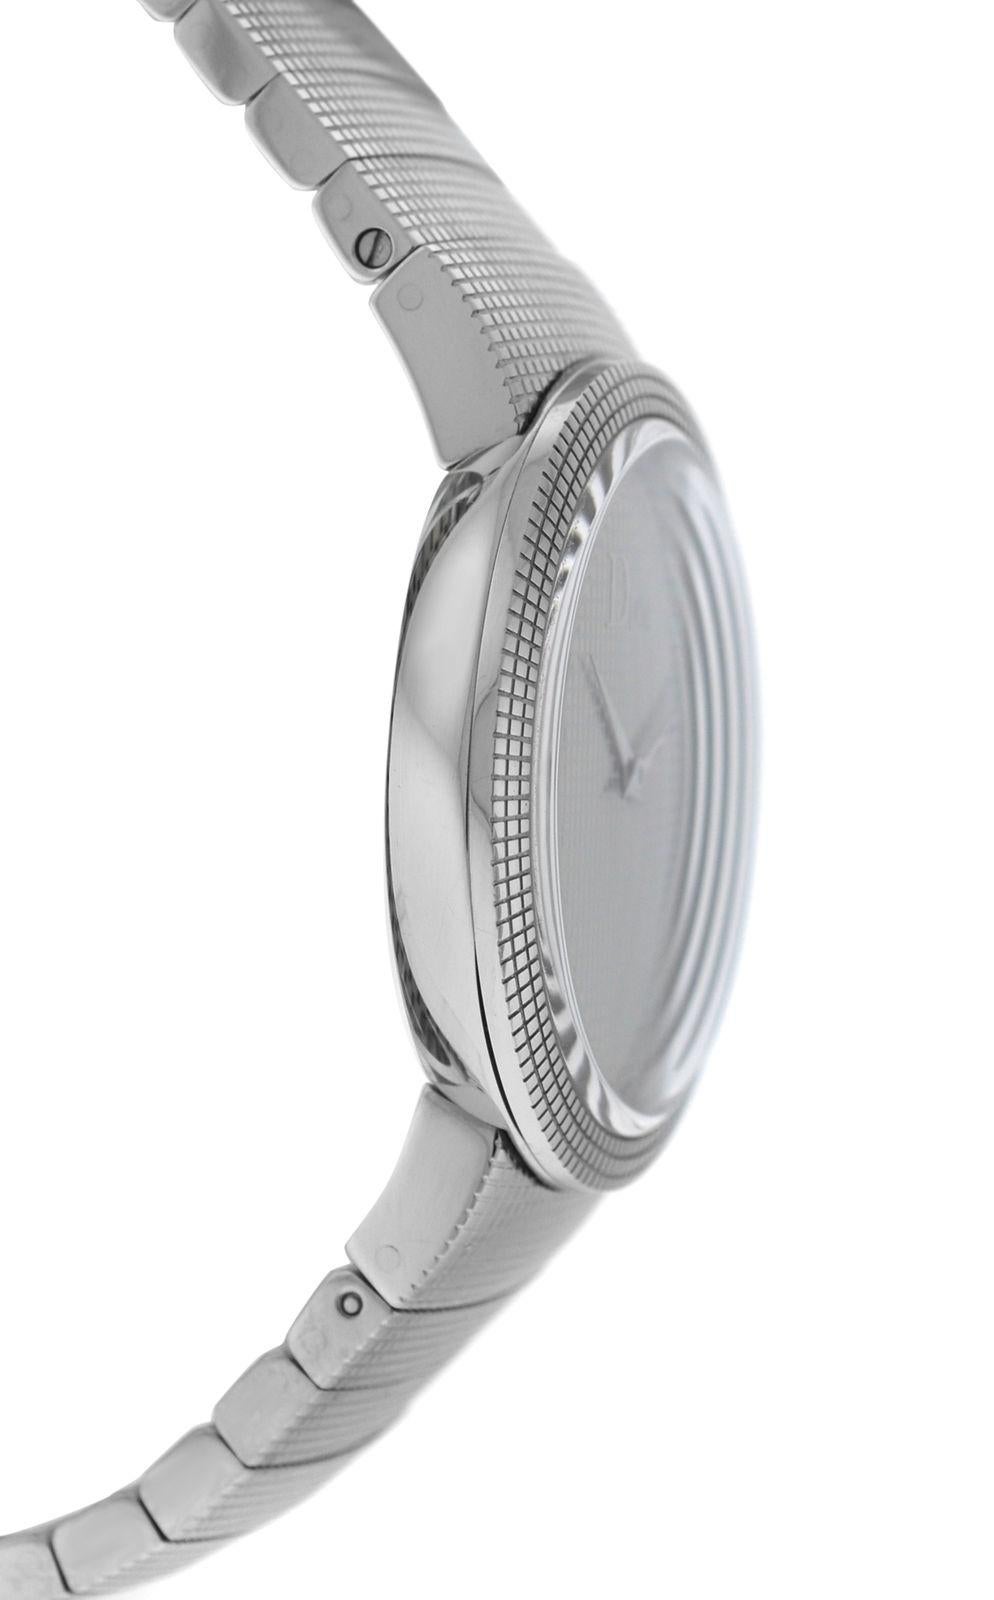 New Lady Christian Dior La D De Dior Steel Quartz Watch 1